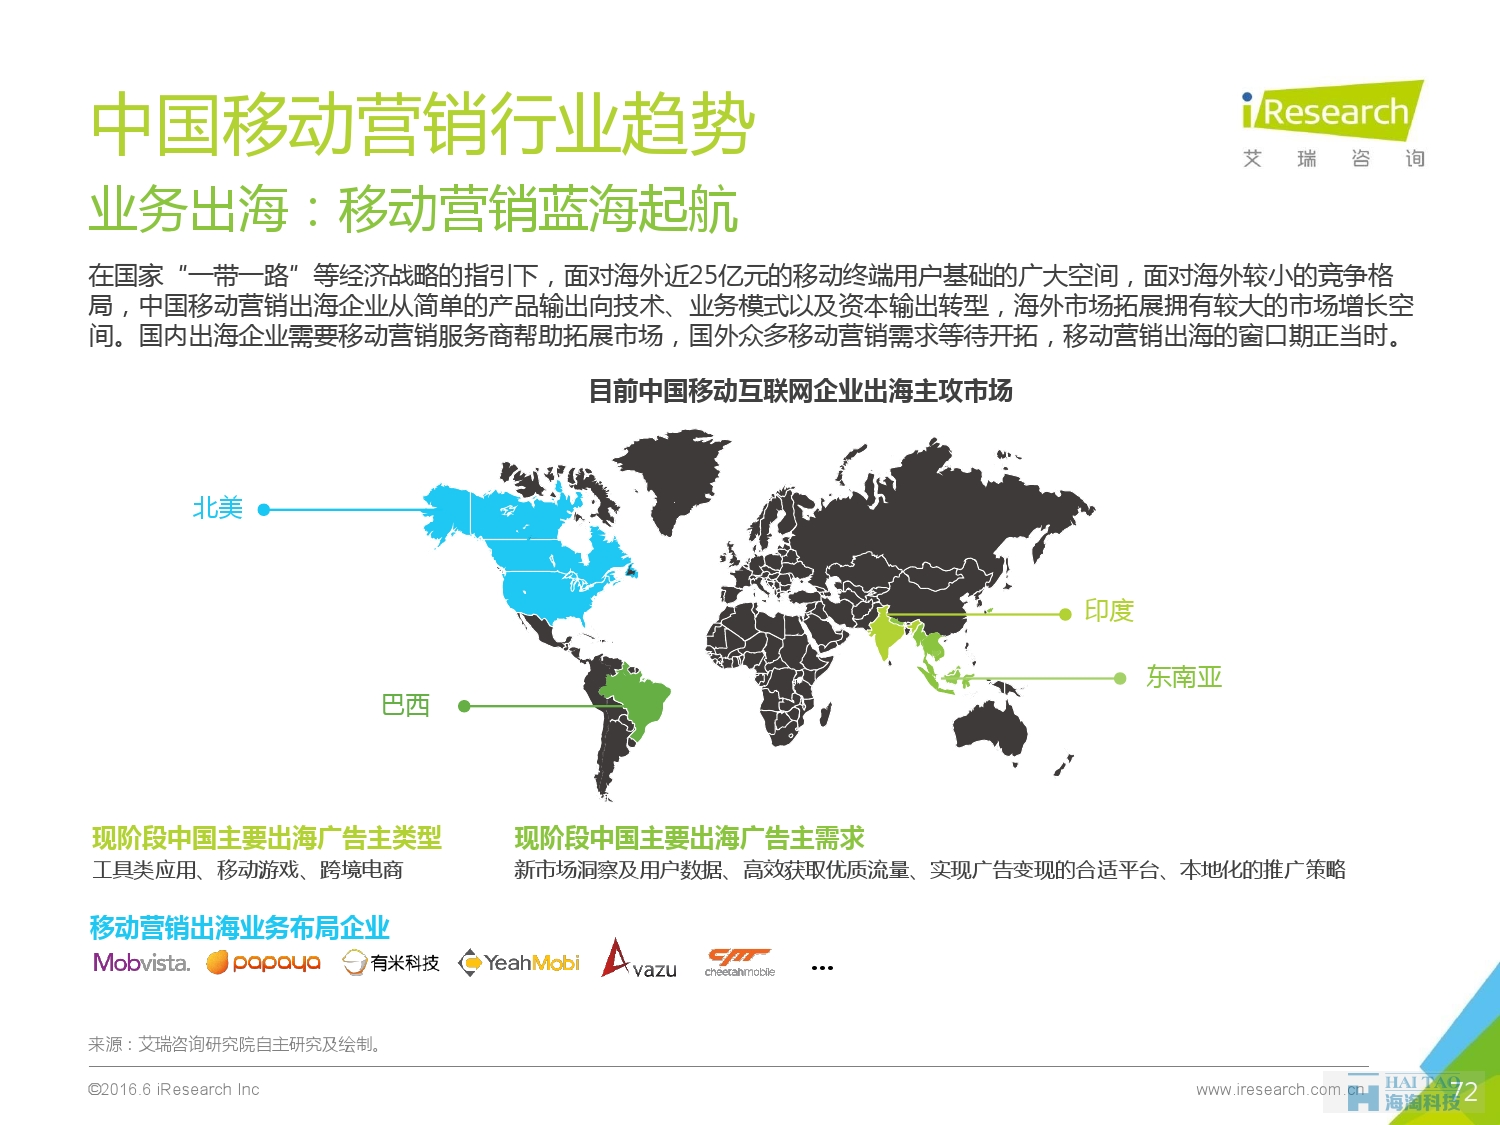 2016年中国移动营销行业研究报告——程序化时代篇_000072